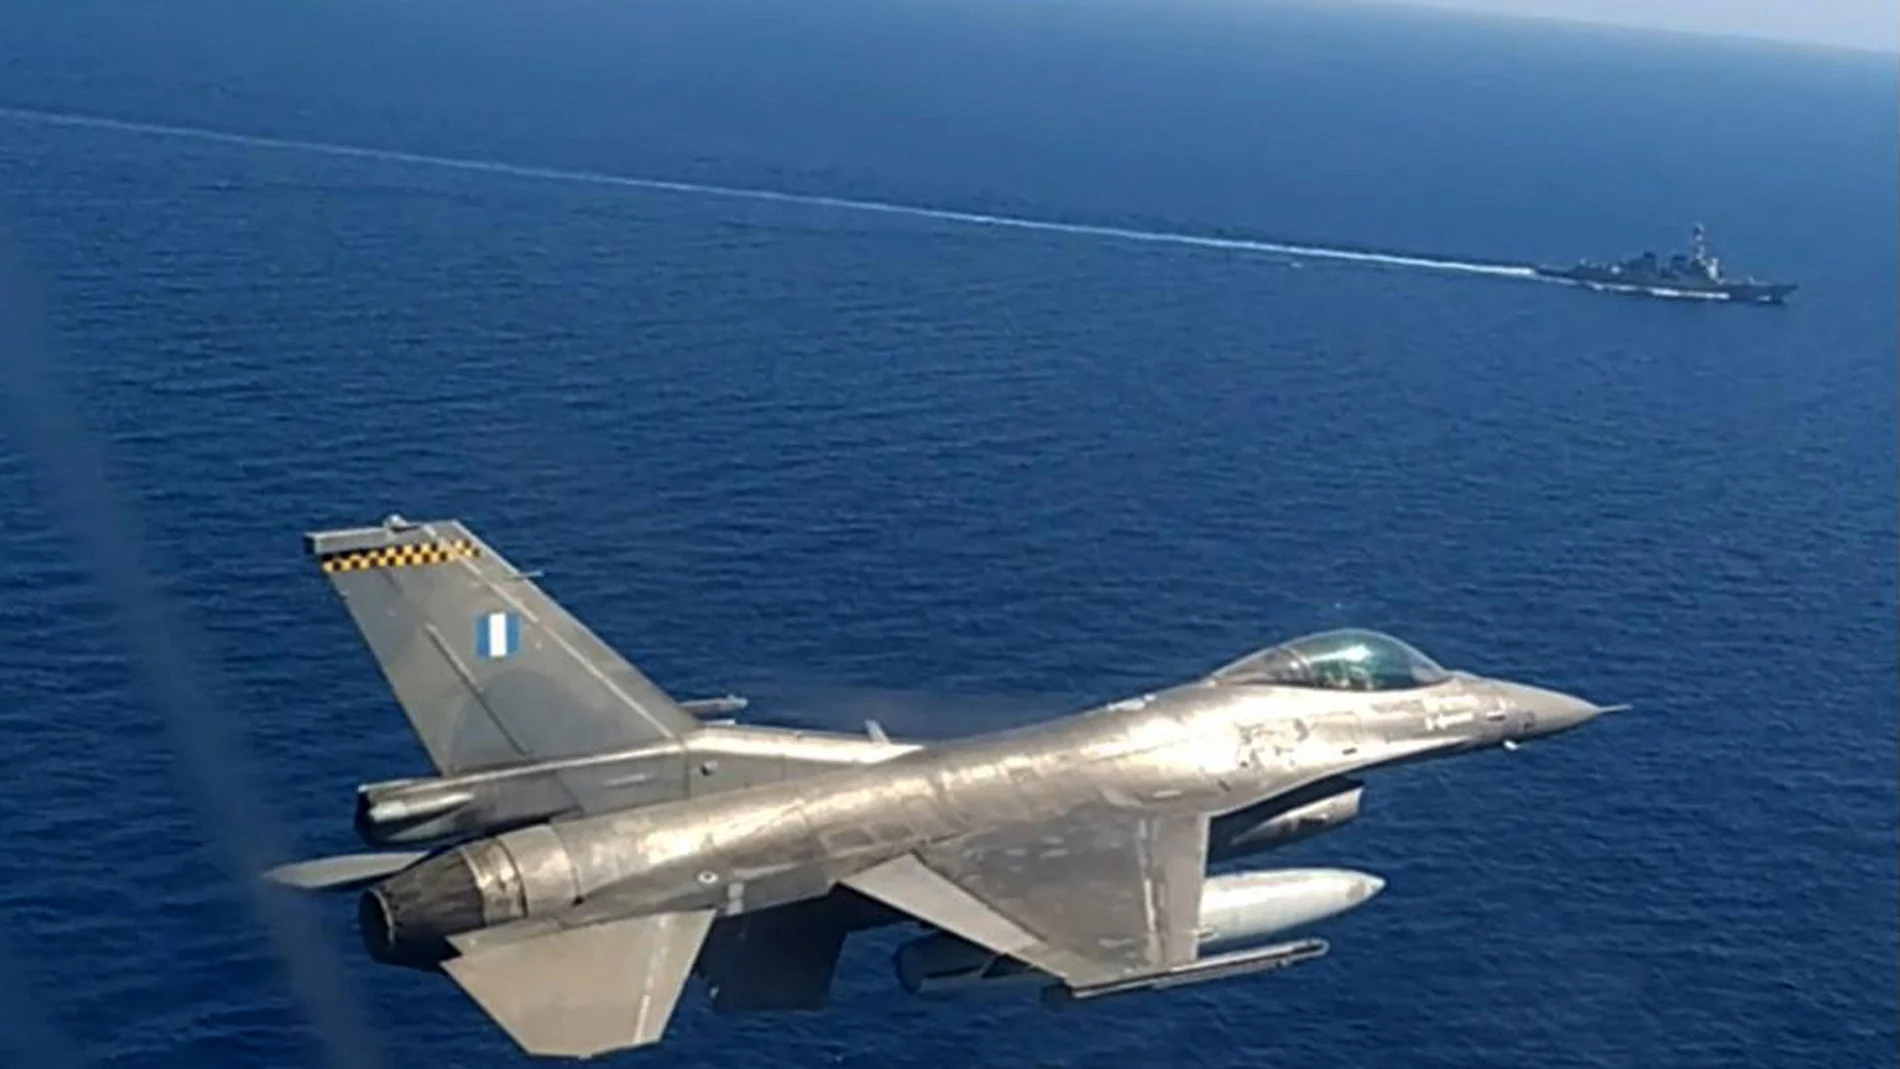 Grecia y Turquía han anunciado nuevas maniobras militares en el Mediterráneo oriental